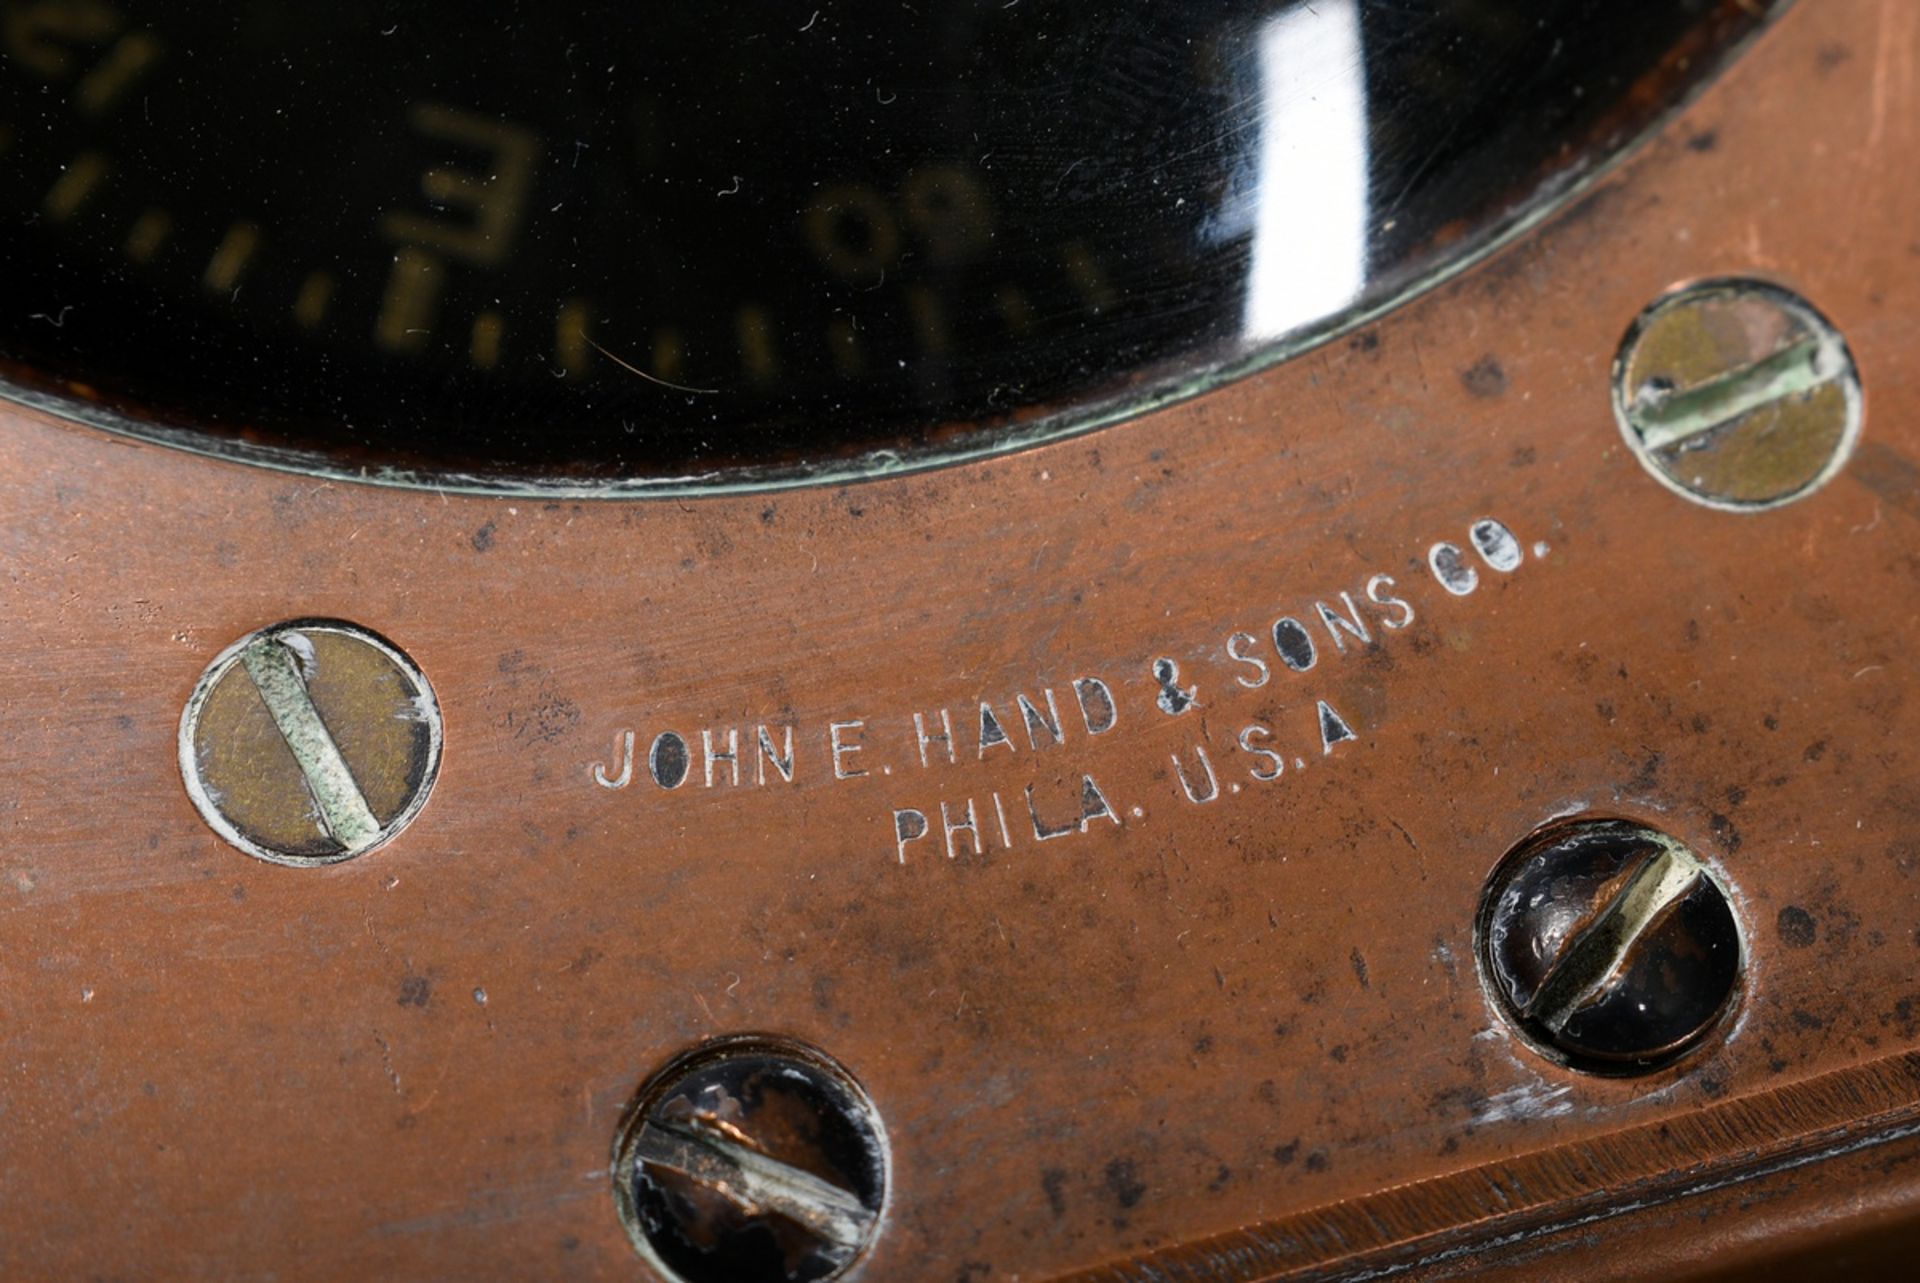 Compass "John E. Hand & Sons Co.", Baltimore/Philadelphia, model no. LMC-101-D, serial no. 13164, c - Image 6 of 8